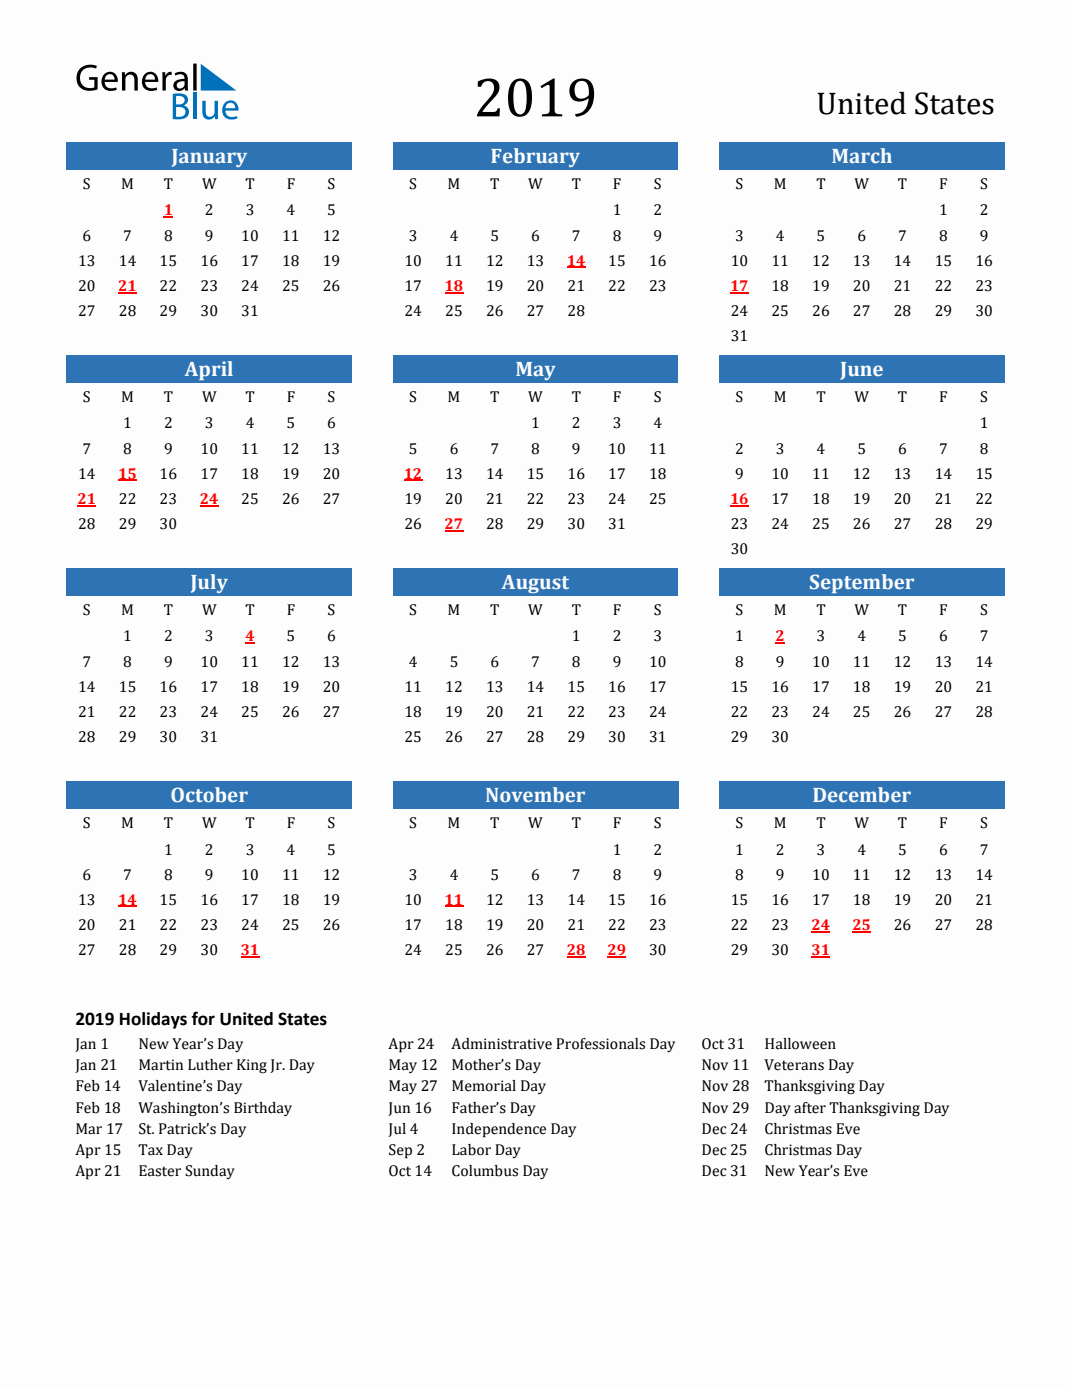 Calendar Year 2019 Federal Holidays